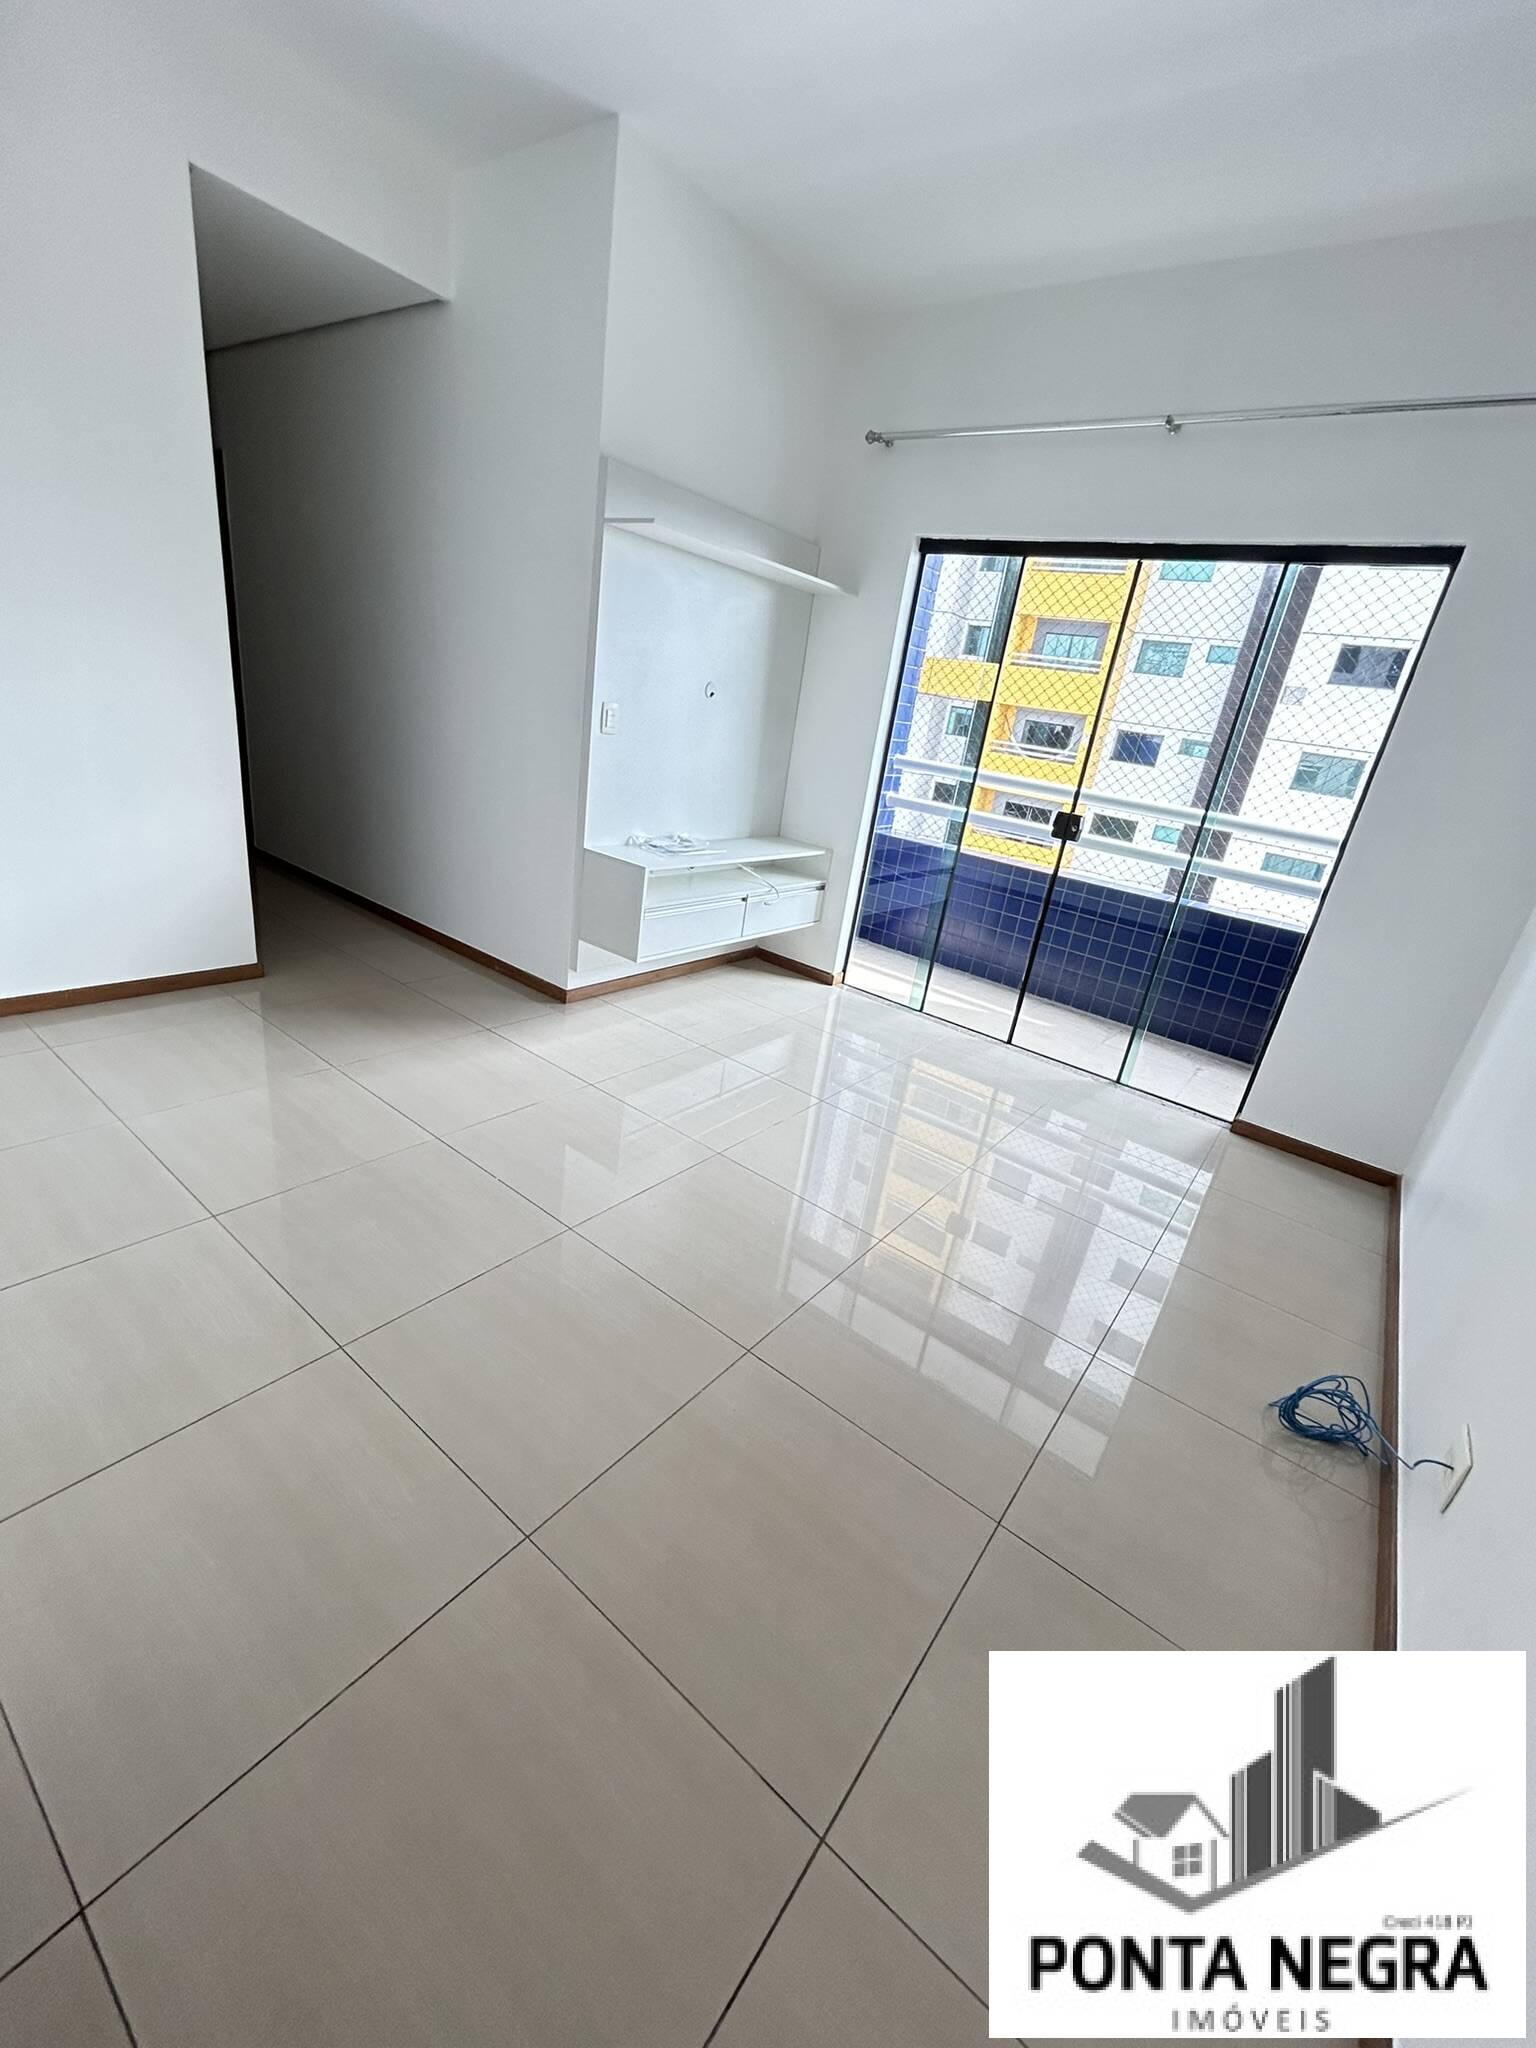 Apartamento, 3 quartos, 94 m² - Foto 1